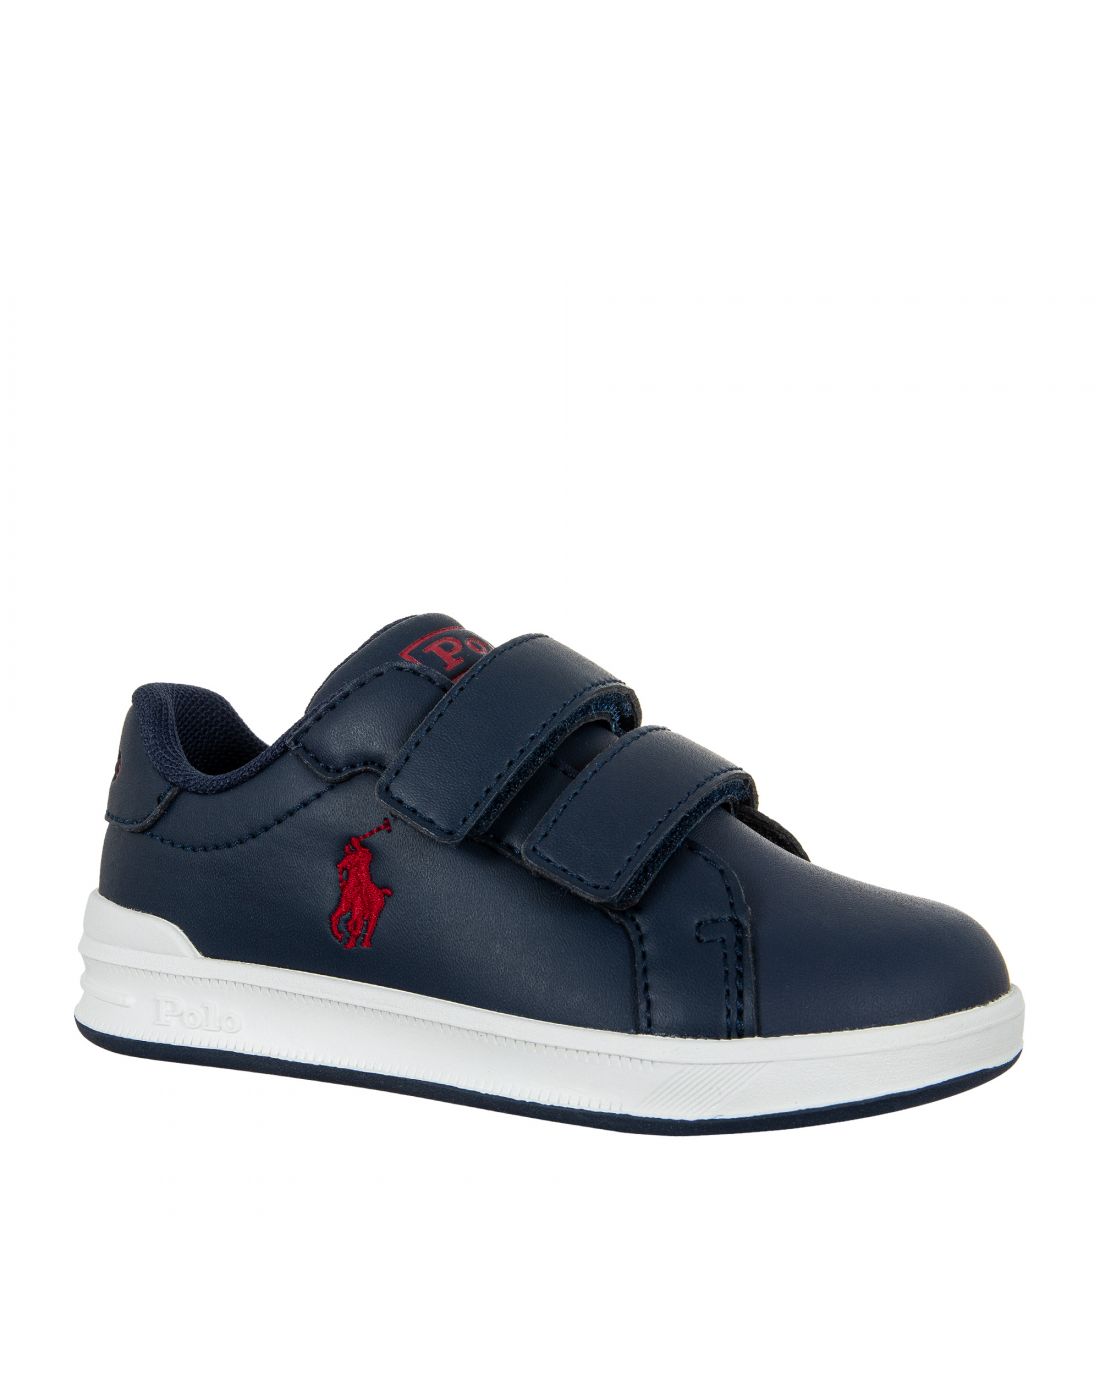 Παιδικά Παπούτσια Sneakers Polo Ralph Lauren, Polo Ralph Lauren, 23265389 |  LapinKids.com | LAPIN KIDS